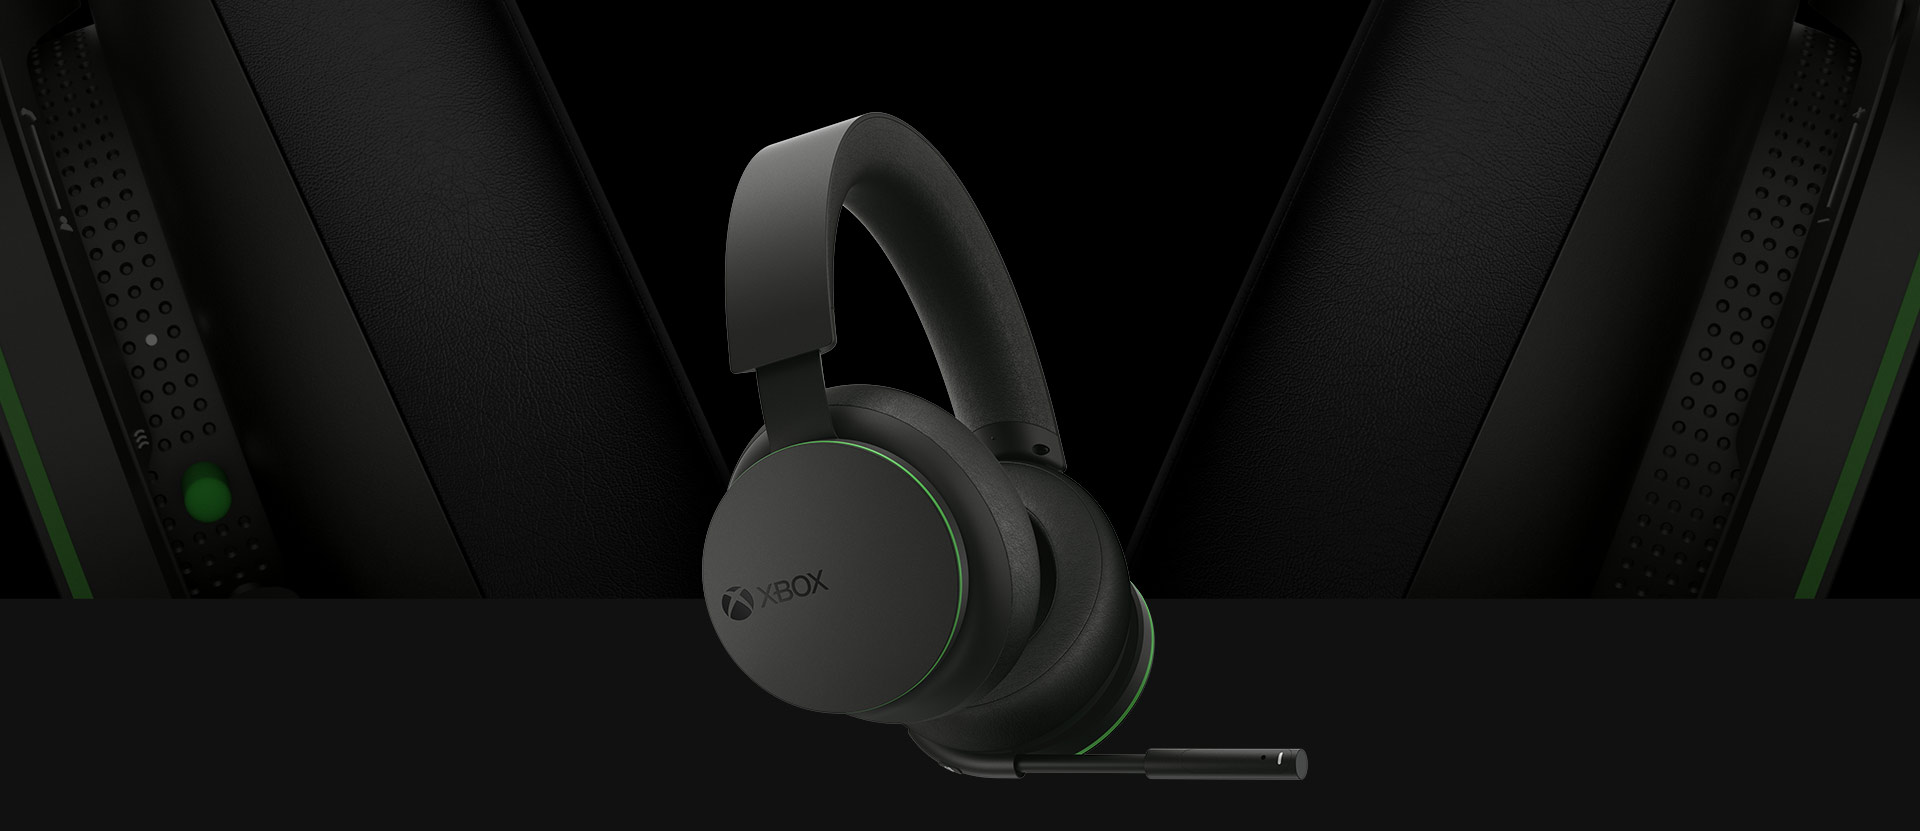 En bild snett framifrån av det trådlösa Xbox-headsetet. En större, mer detaljerad bild på öronkåporna finns bakom headsetet.